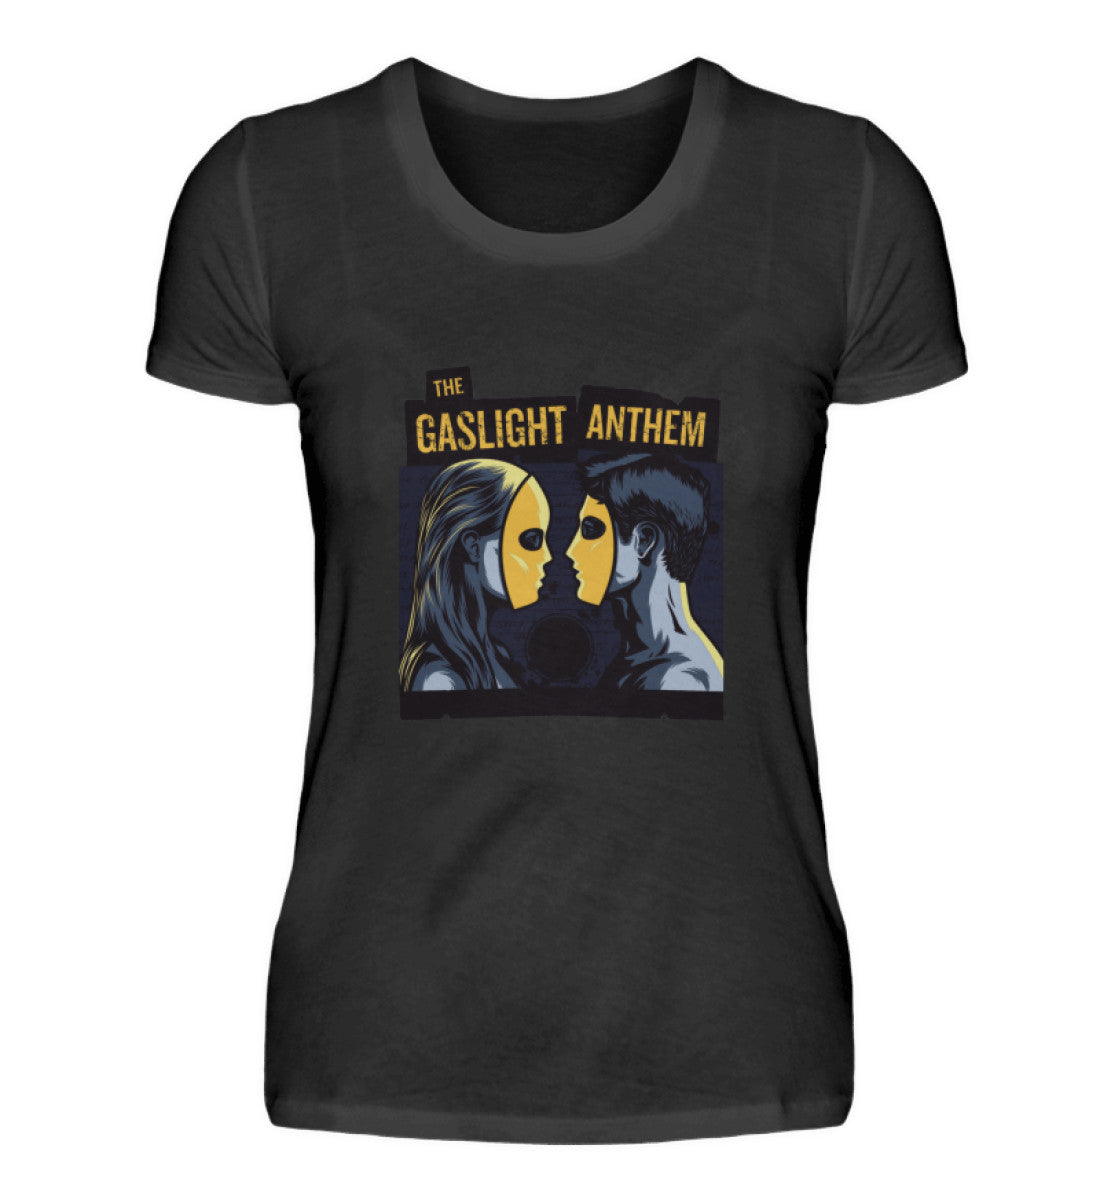 The Gaslight Anthem T-Shirt Women